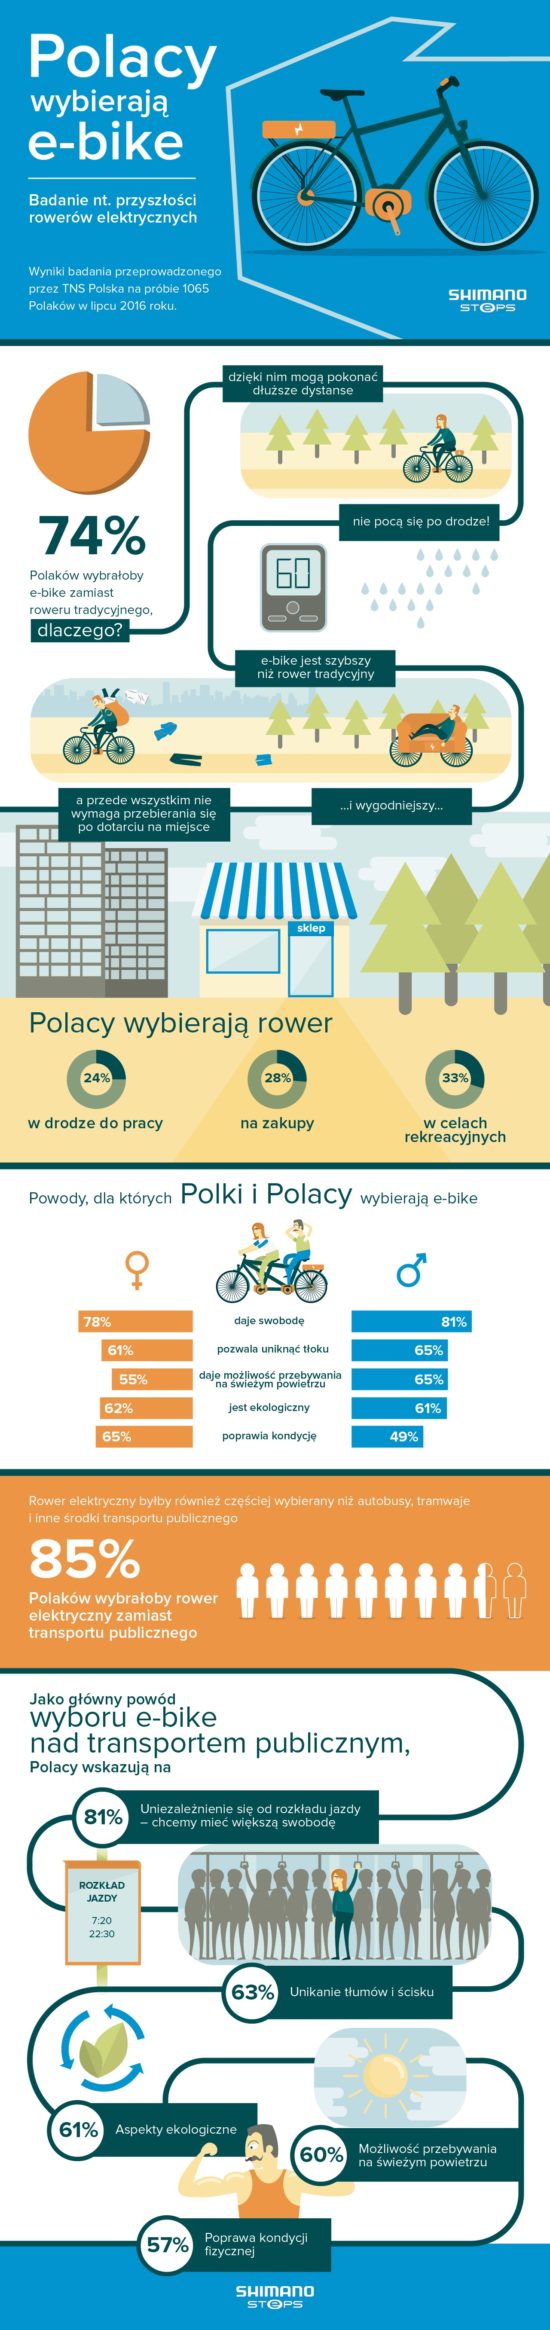 infografika_polacy-wybieraja-e-bike_shimanosteps